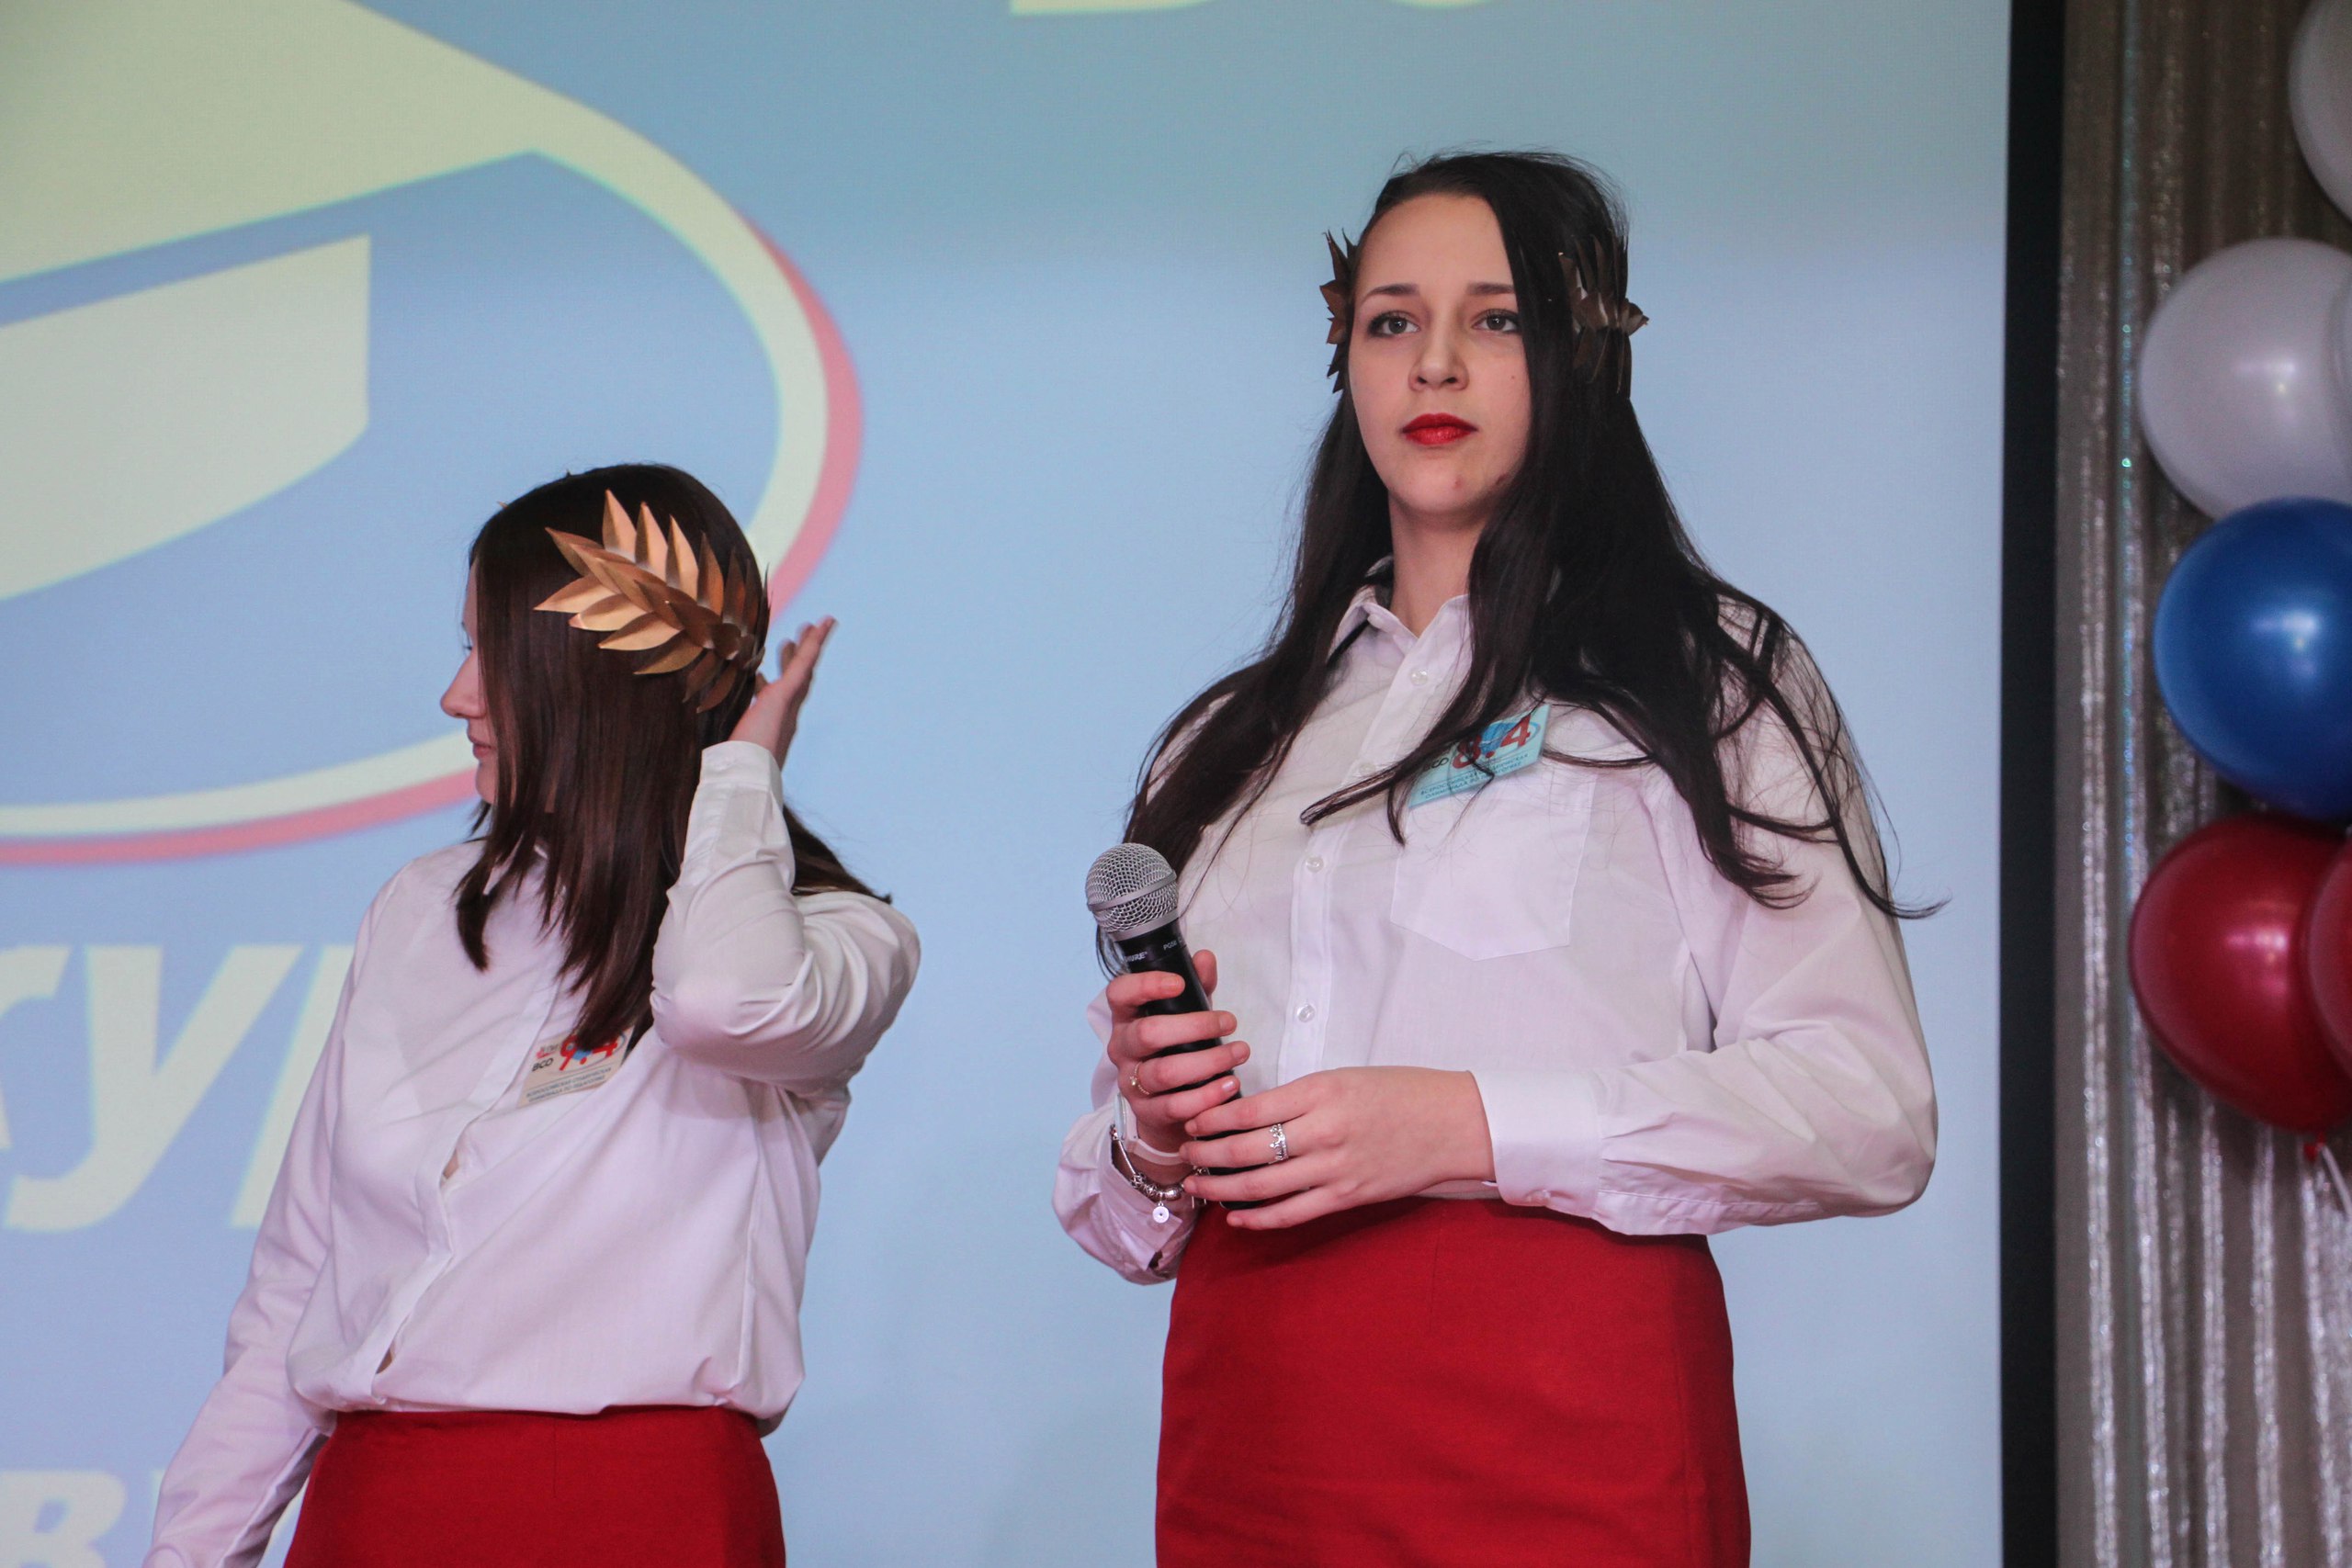 Команда Мининского университета приняла участие во Всероссийской олимпиаде студентов по педагогике